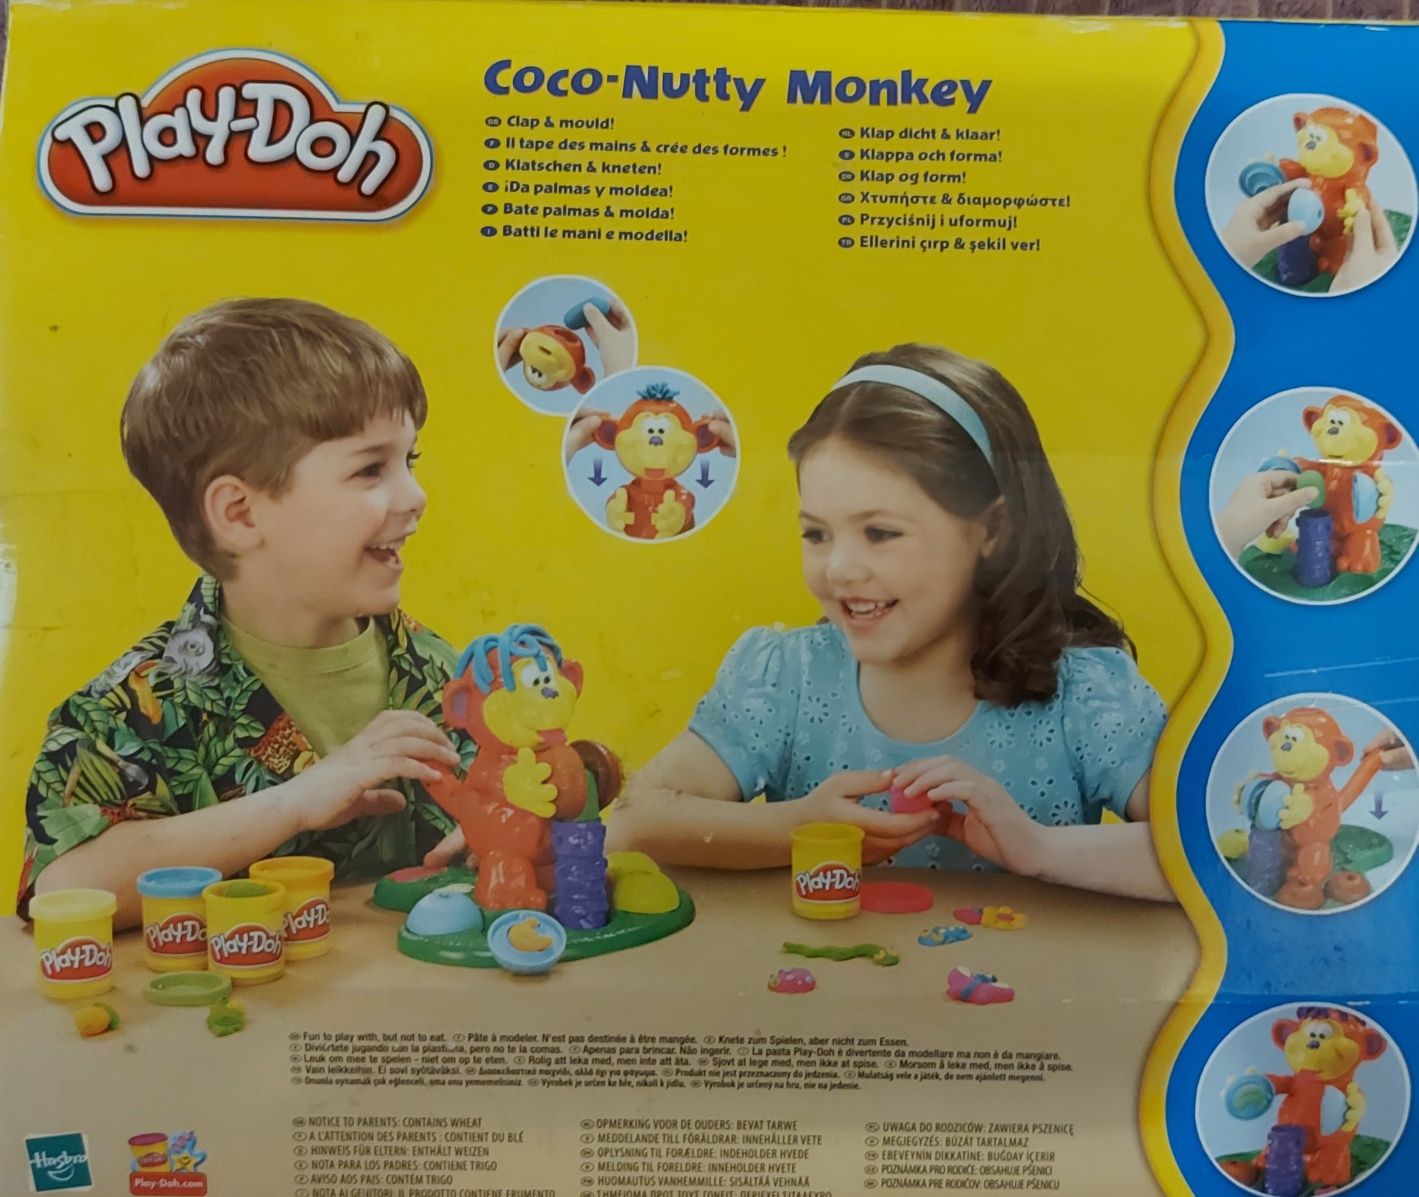 Coco-Nutty Monkey